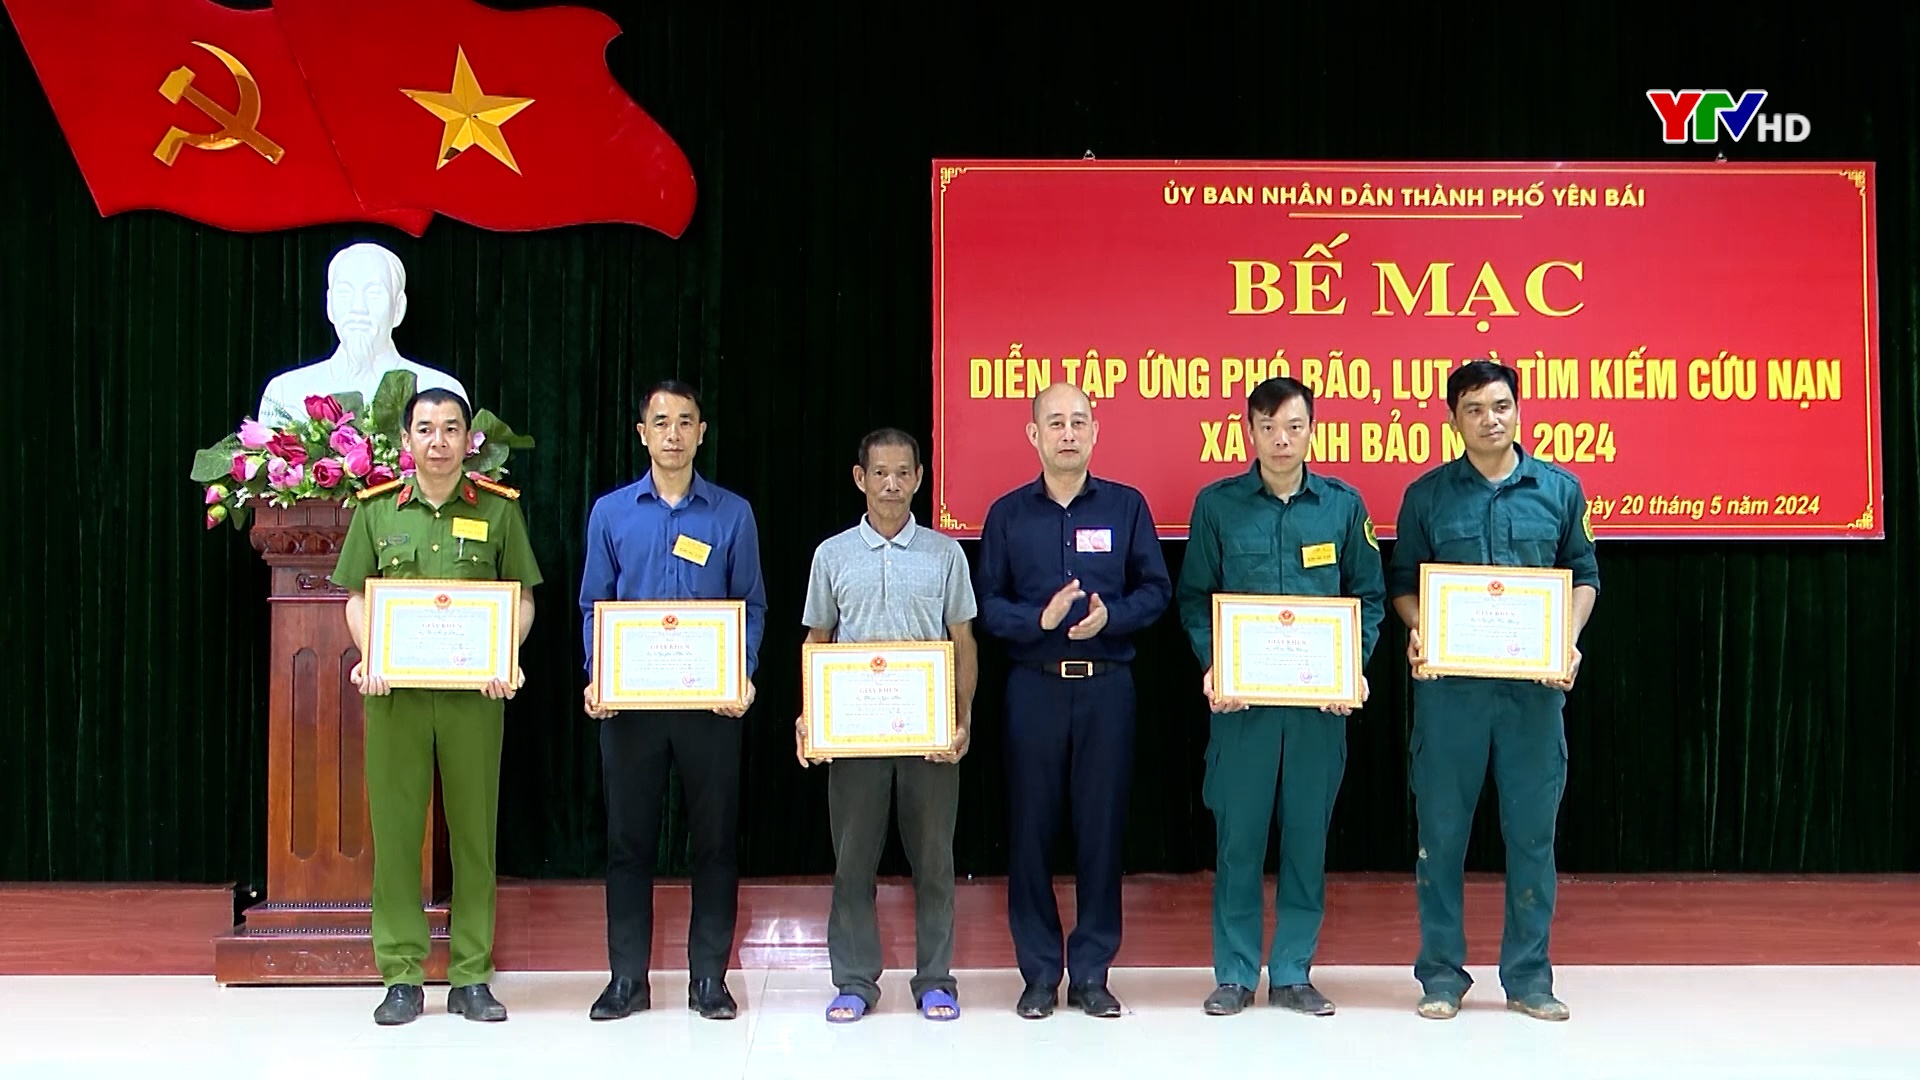 Diễn tập PCLB - TKCN tại xã Minh Bảo, thành phố Yên Bái đạt loại giỏi